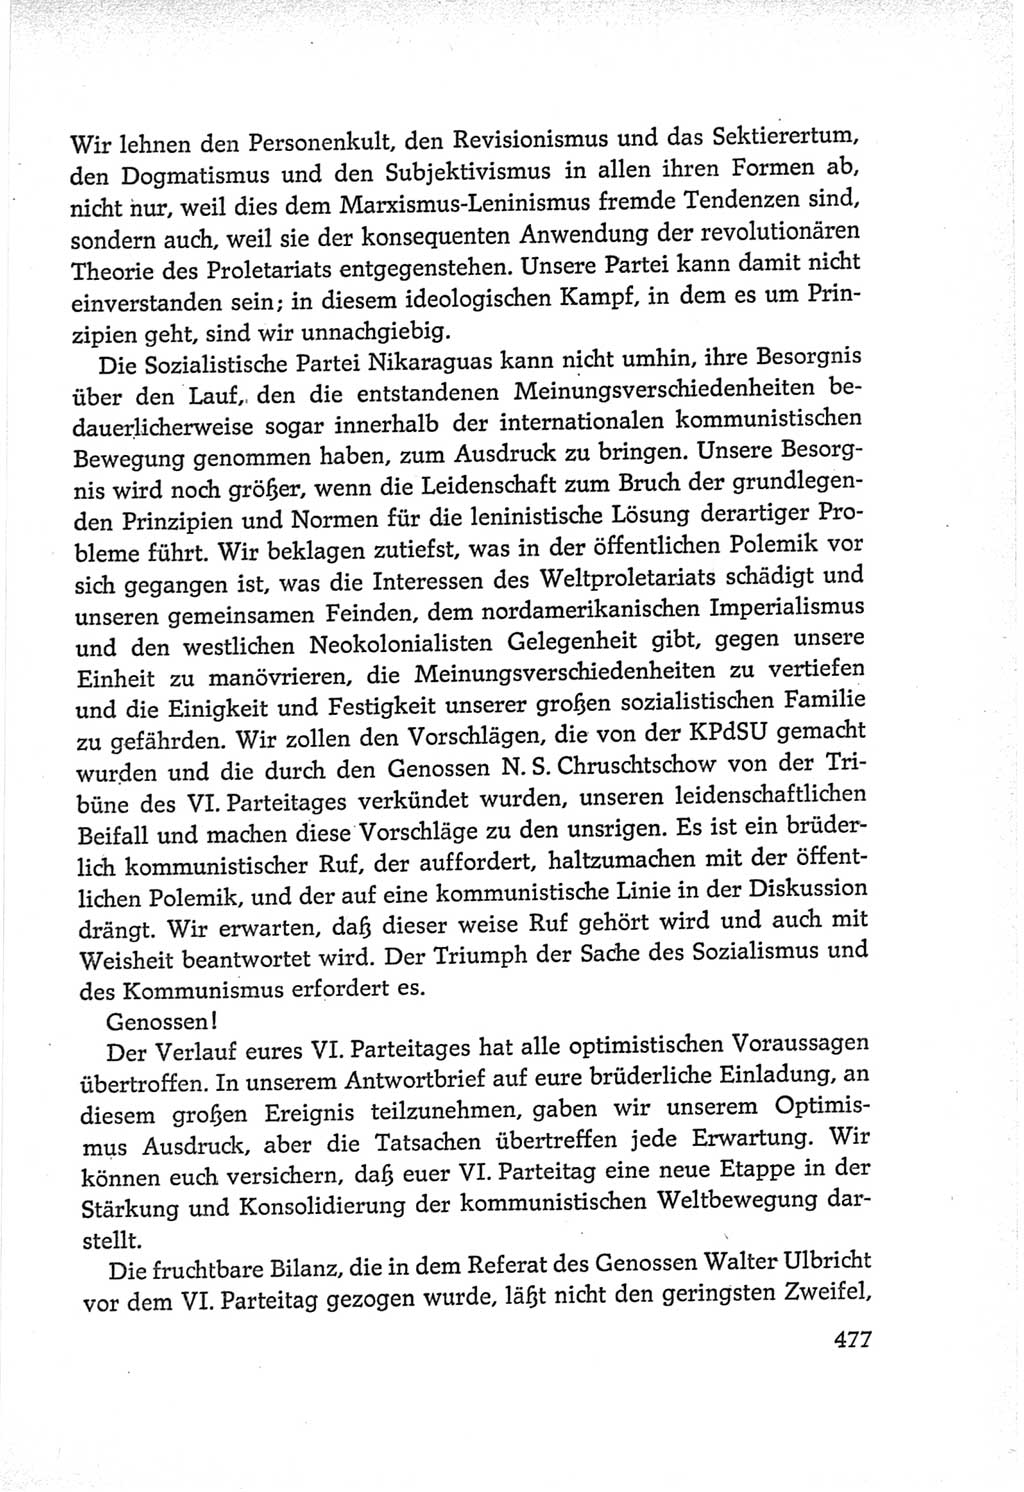 Protokoll der Verhandlungen des Ⅵ. Parteitages der Sozialistischen Einheitspartei Deutschlands (SED) [Deutsche Demokratische Republik (DDR)] 1963, Band Ⅱ, Seite 477 (Prot. Verh. Ⅵ. PT SED DDR 1963, Bd. Ⅱ, S. 477)